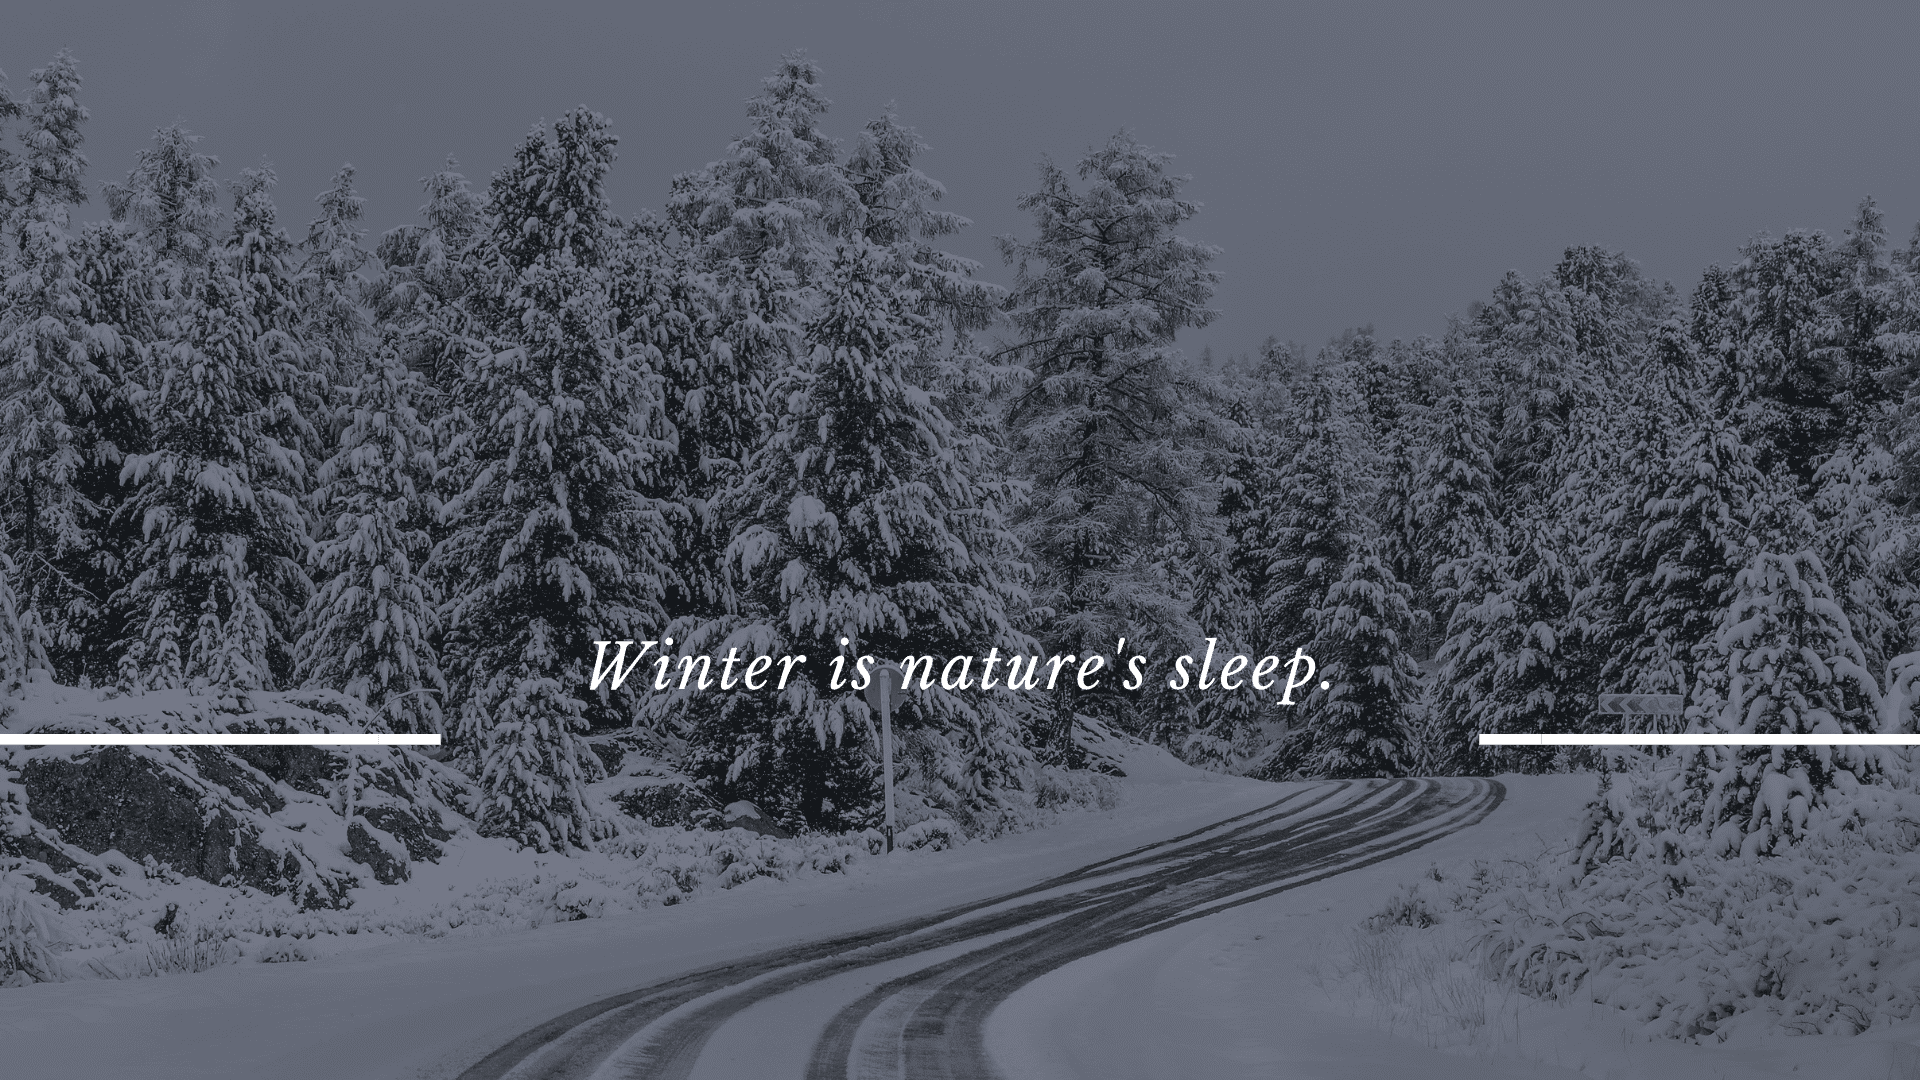 Обои Природа Зима, обои для рабочего стола, фотографии природа, зима, снег,  горы, холмы, деревья Обои для рабочего стола, скачать обои картинки  заставки на рабочий стол.